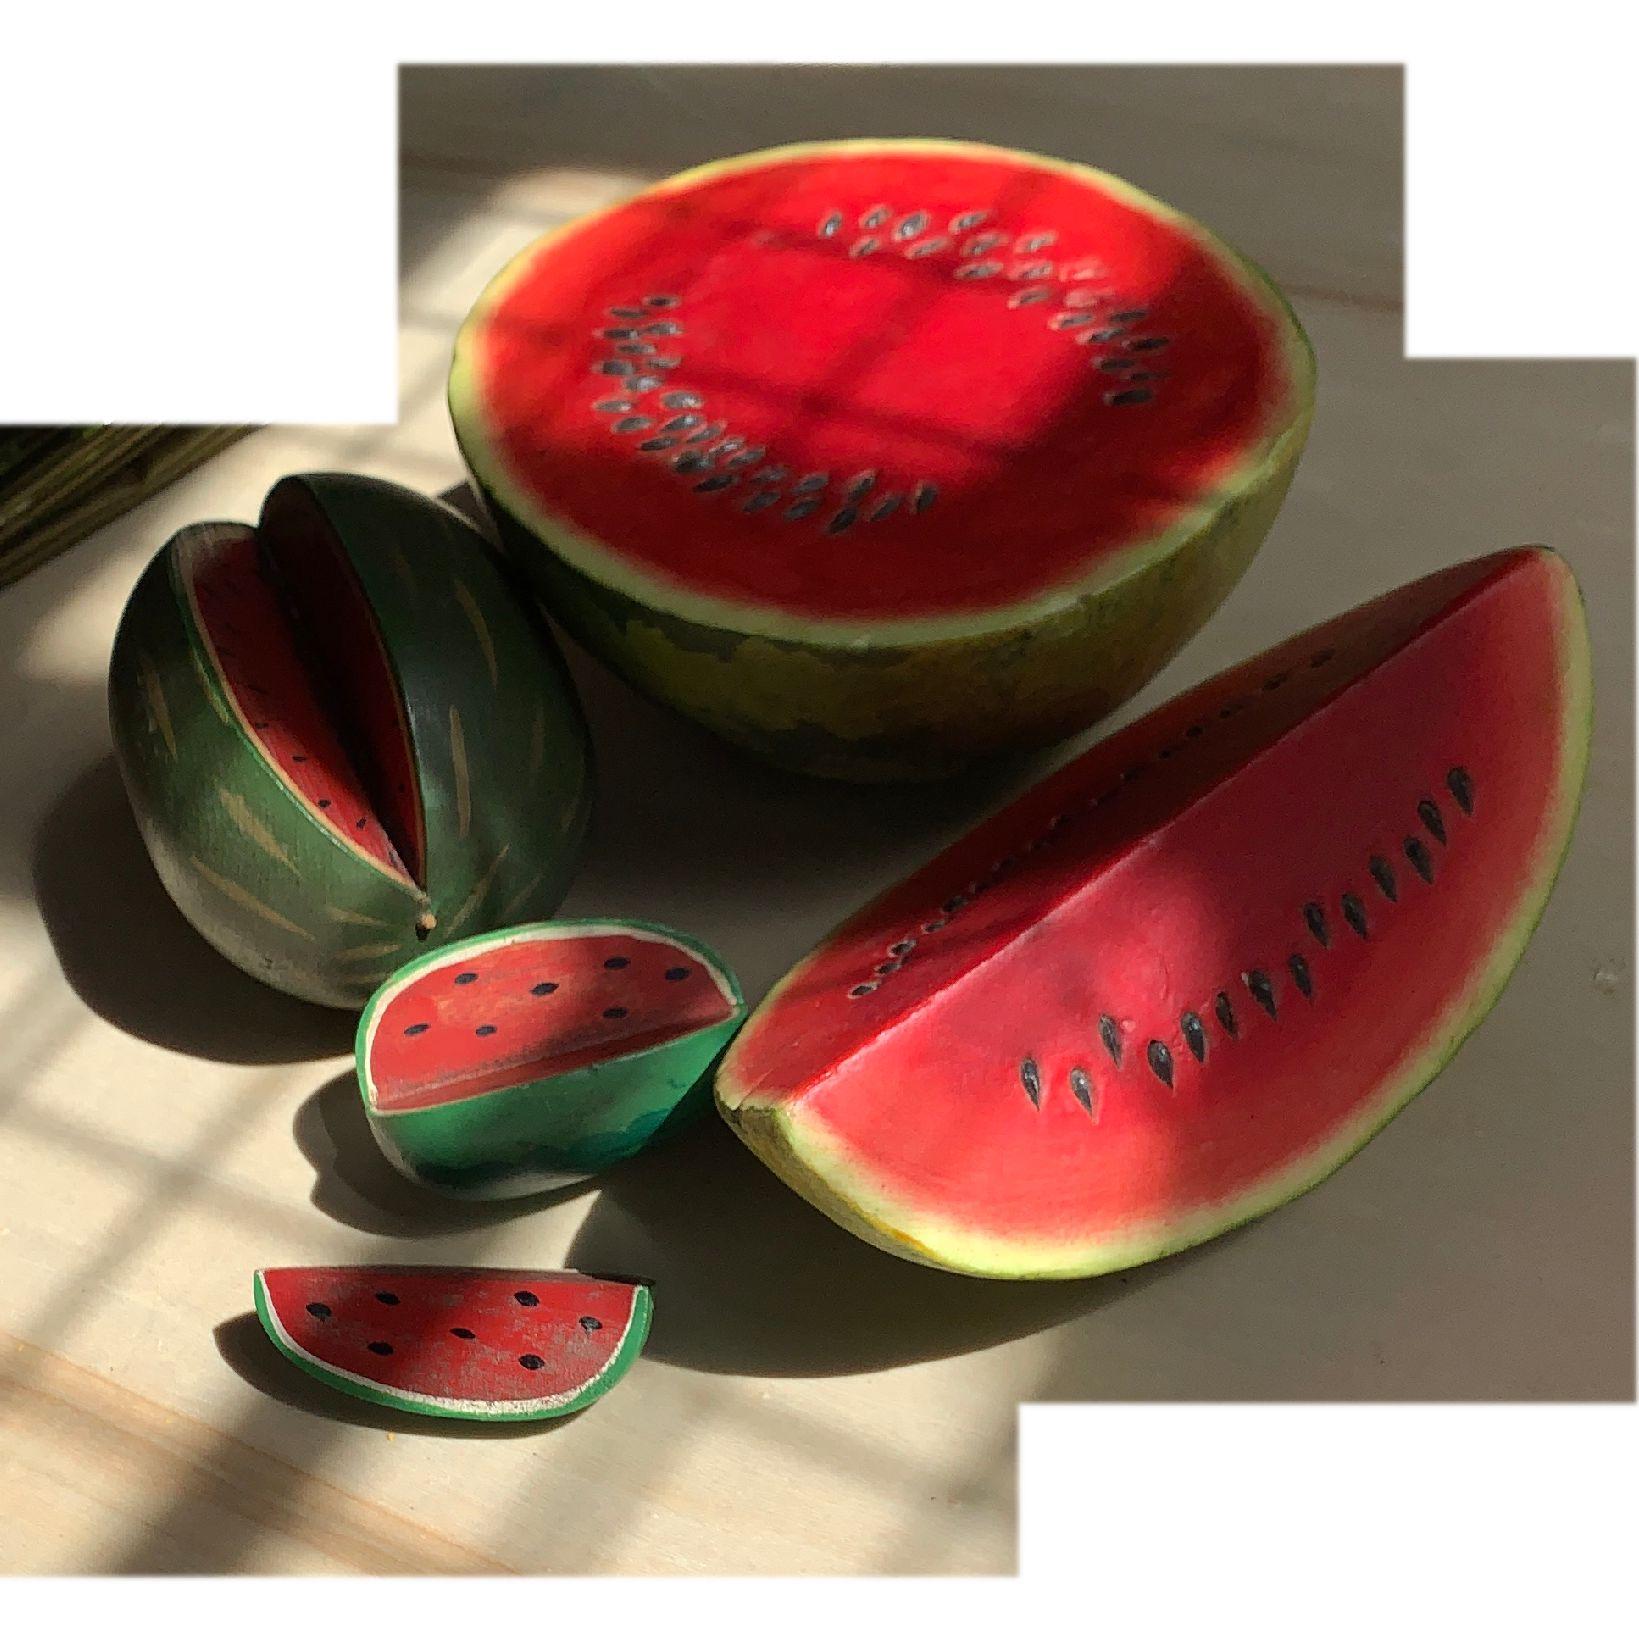 Vintage watermelon hand carved sculpture set, decoy decor, Trompe L’Oeil, hand painted melon sculptural set. Gorgeous. Signed by artist.
Largest piece measures approximate: 7